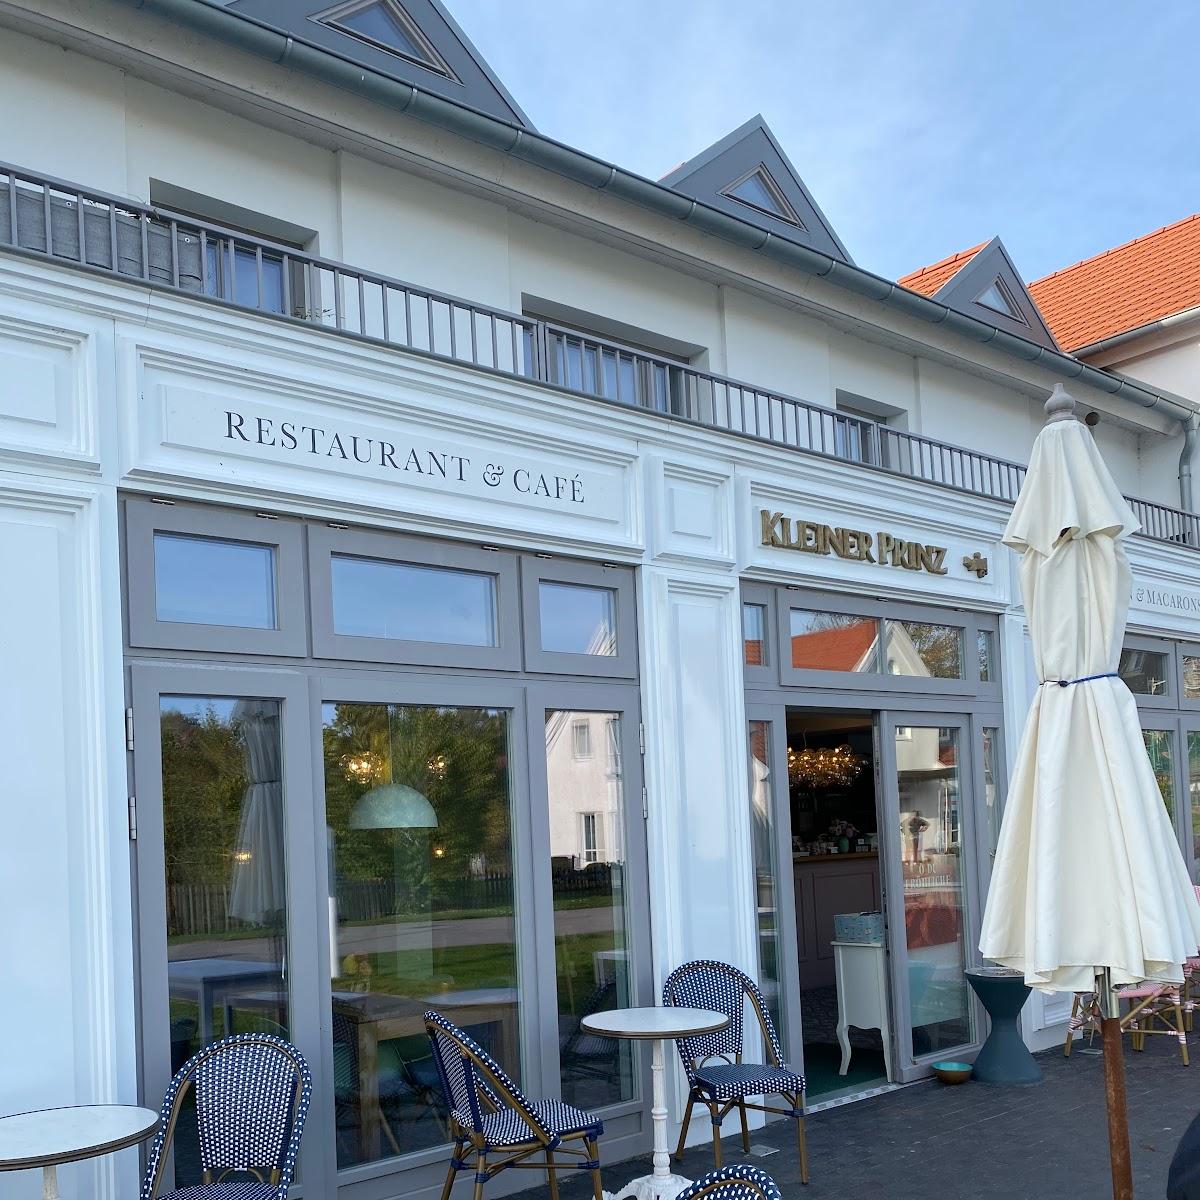 Restaurant "Kleiner Prinz Hiddensee" in Insel Hiddensee